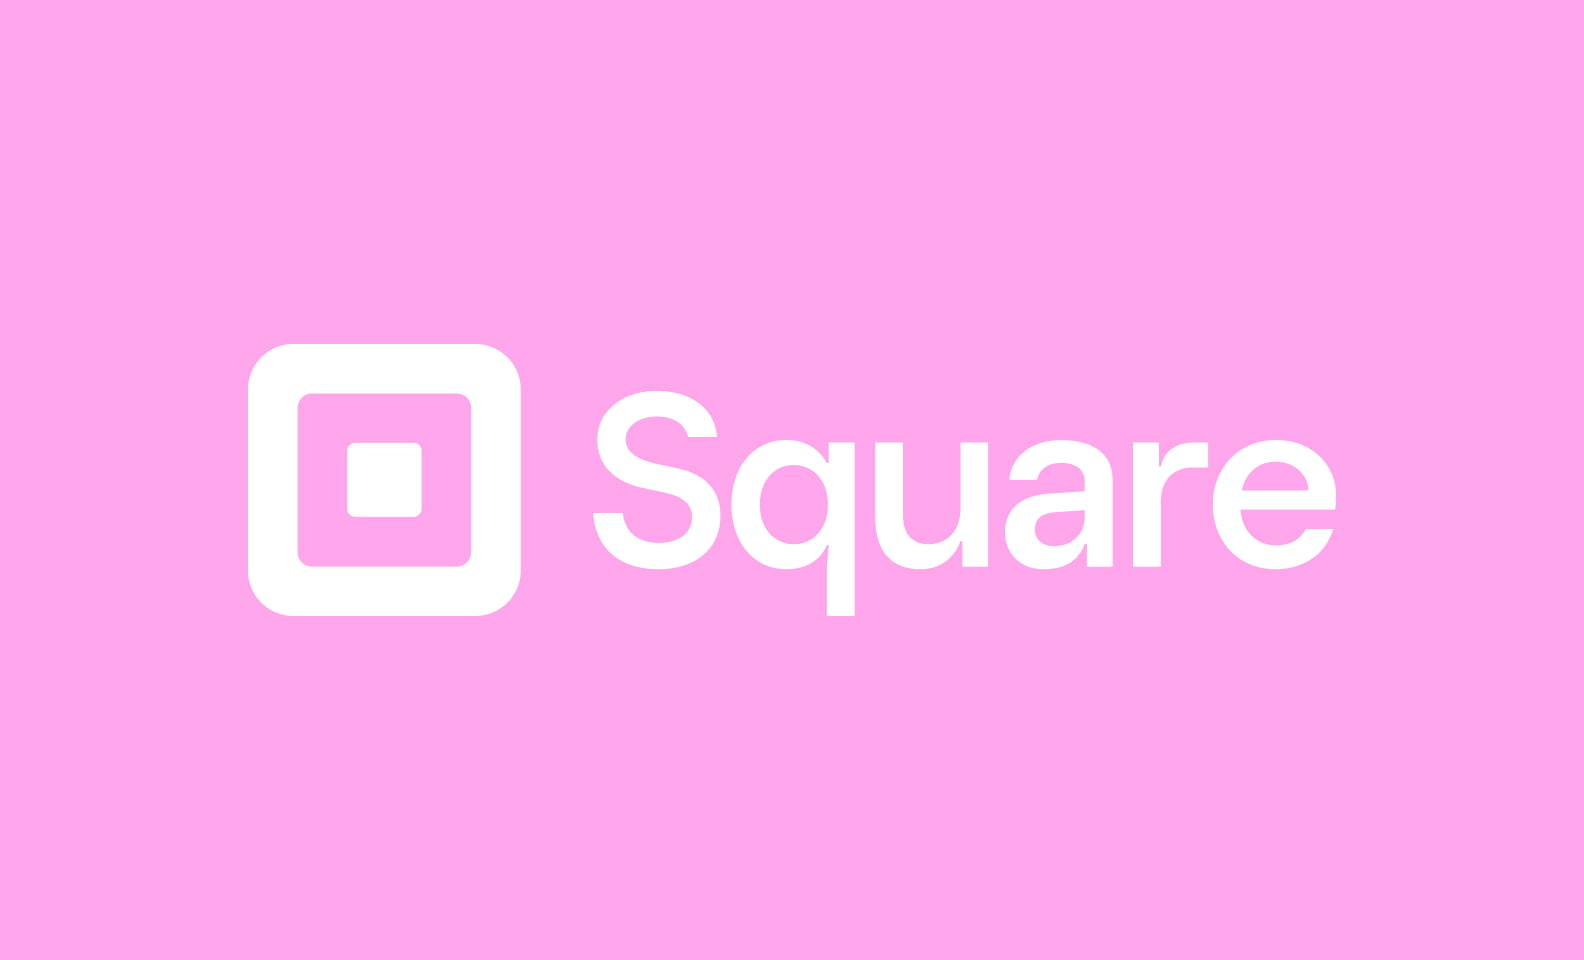 Square fintech company logo